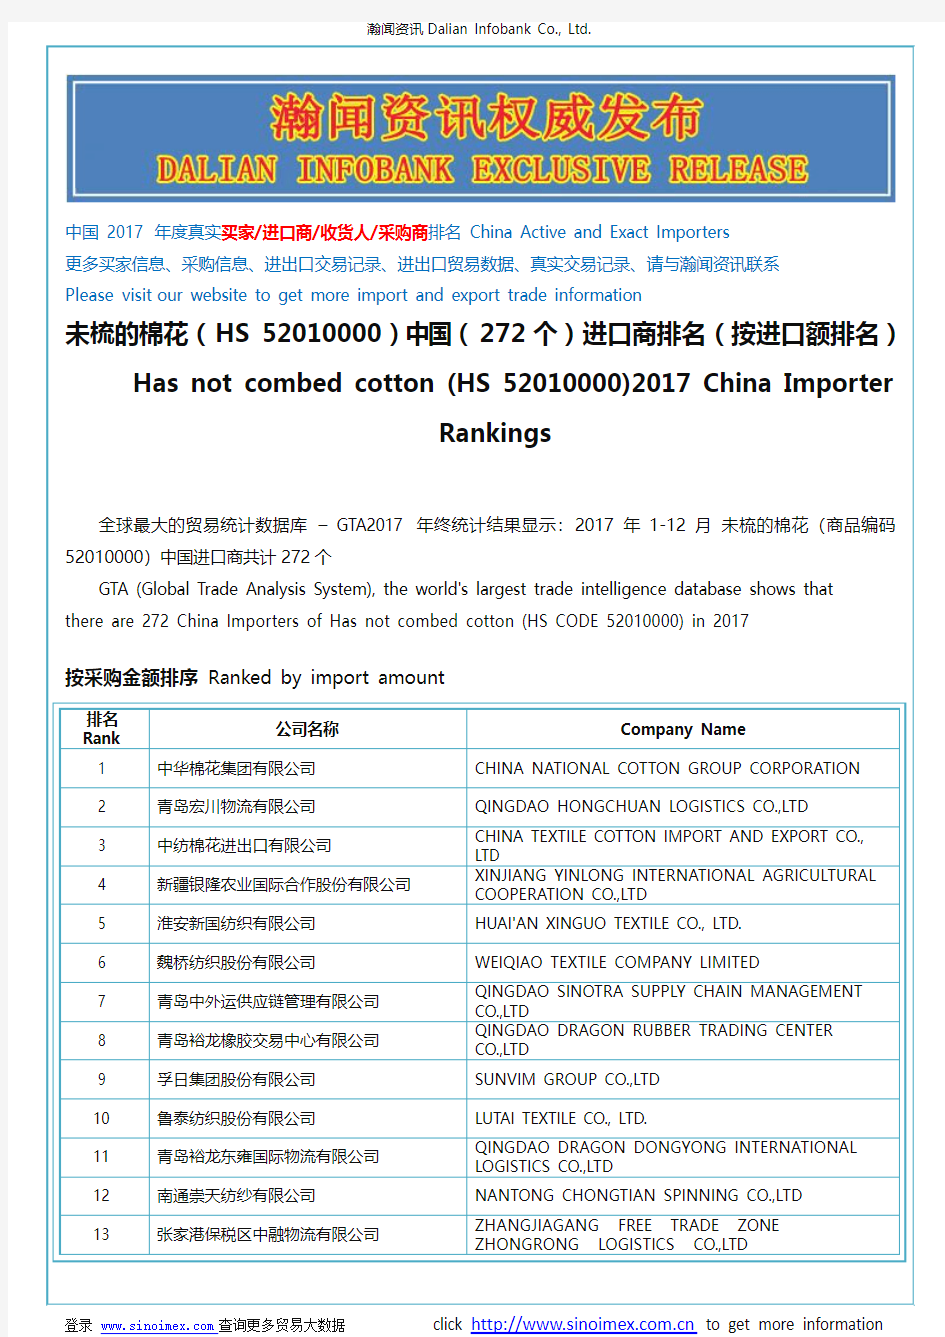 未梳的棉花(HS 52010000)2017 中国(272个)进口商排名(按进口额排名)